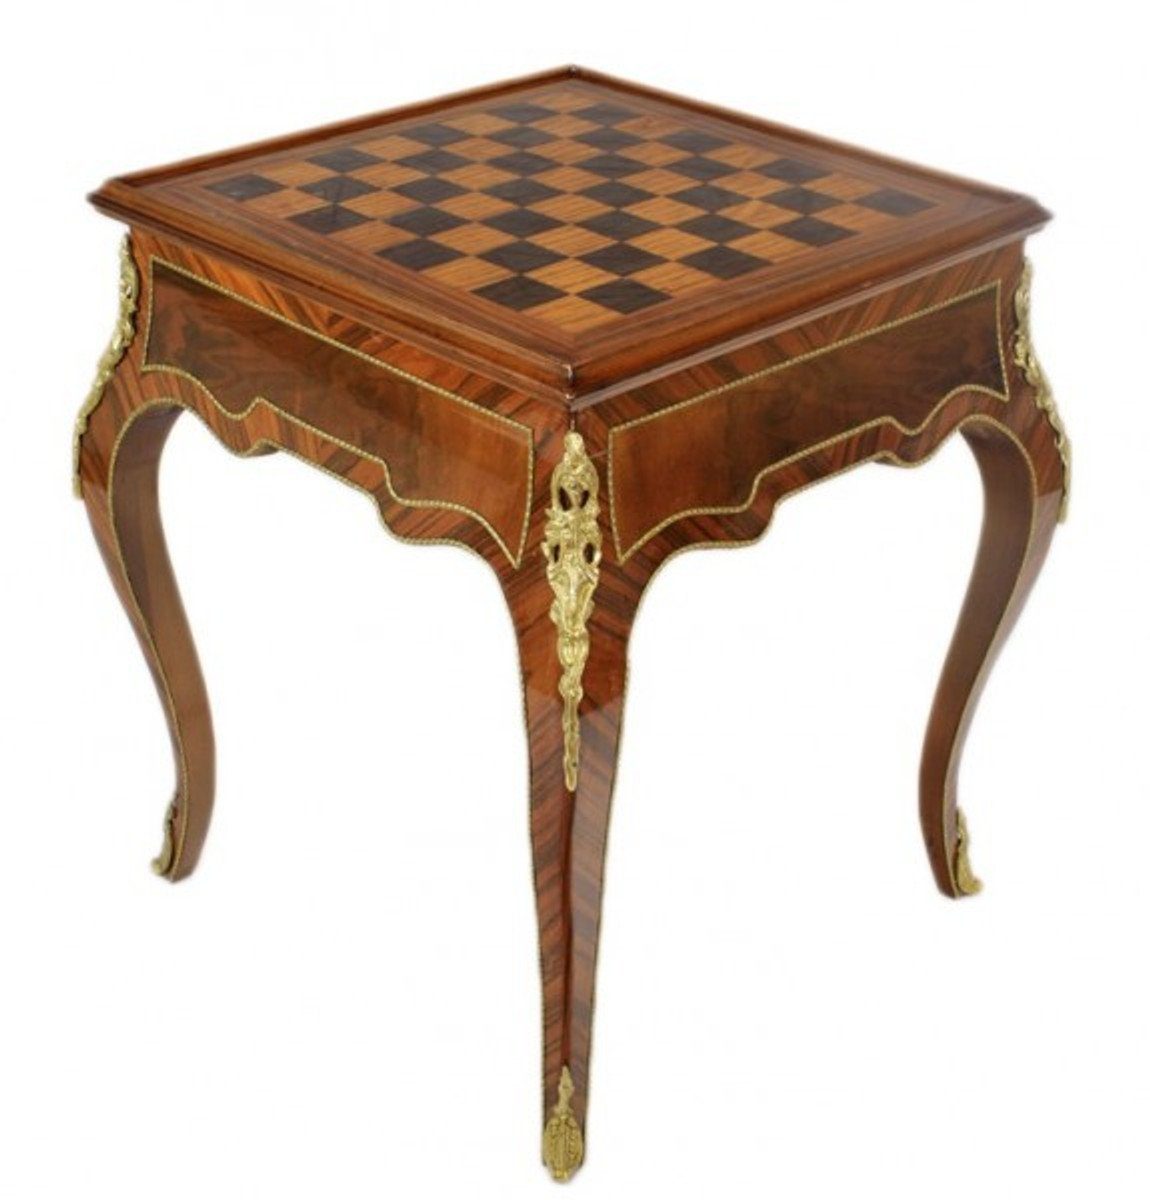 Casa Padrino Gamingtisch Art Deco Spieltisch Schach / Backgammon Tisch Mahagoni Braun L 60 x B 60 x H 71 cm - Möbel Antik Stil Barock